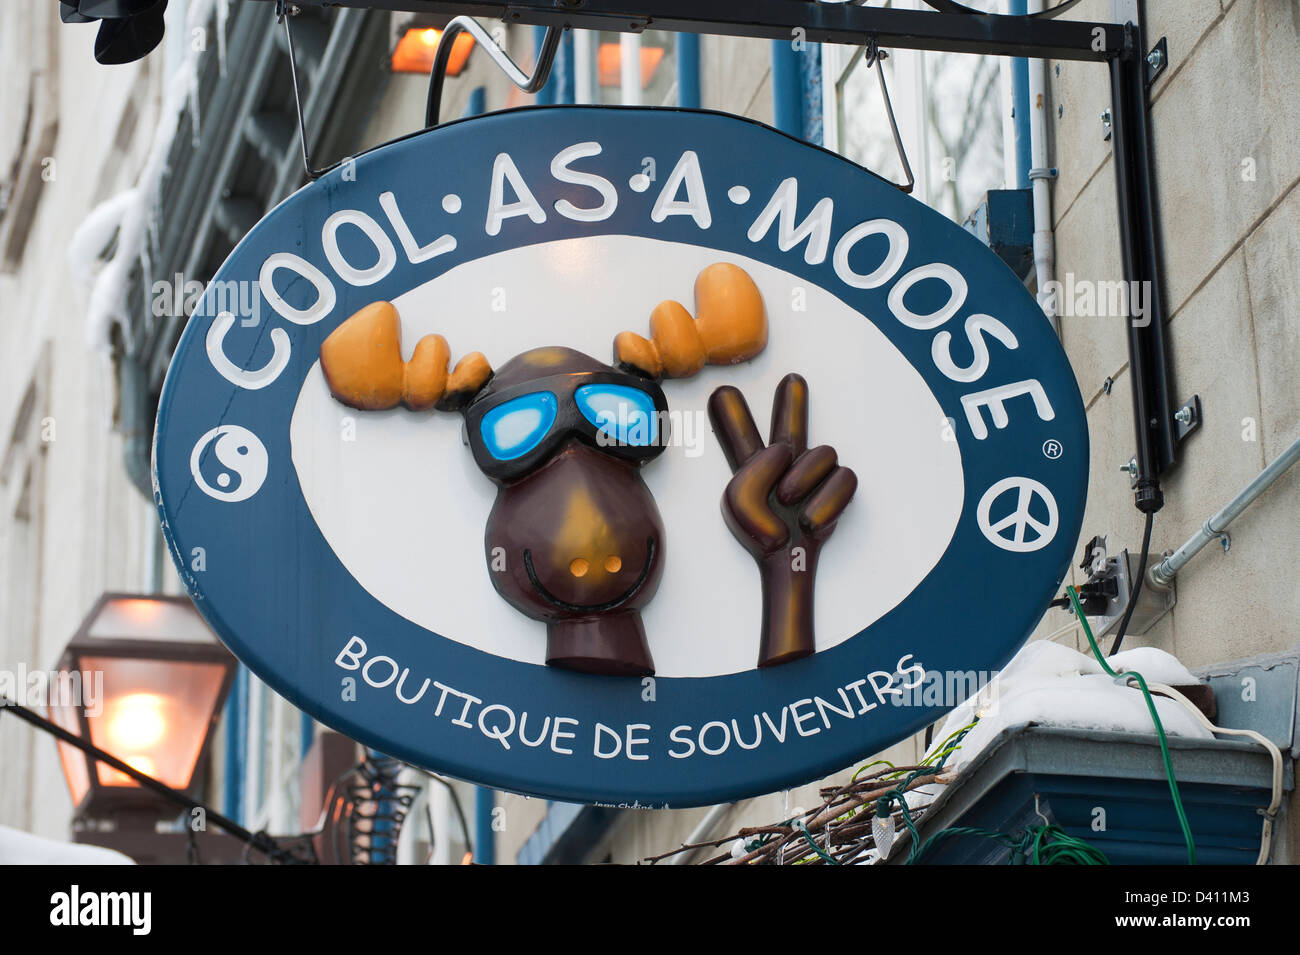 Appendere cartello in legno per raffreddare come un alce souvenir shop nella città di Québec, Canada. Foto Stock